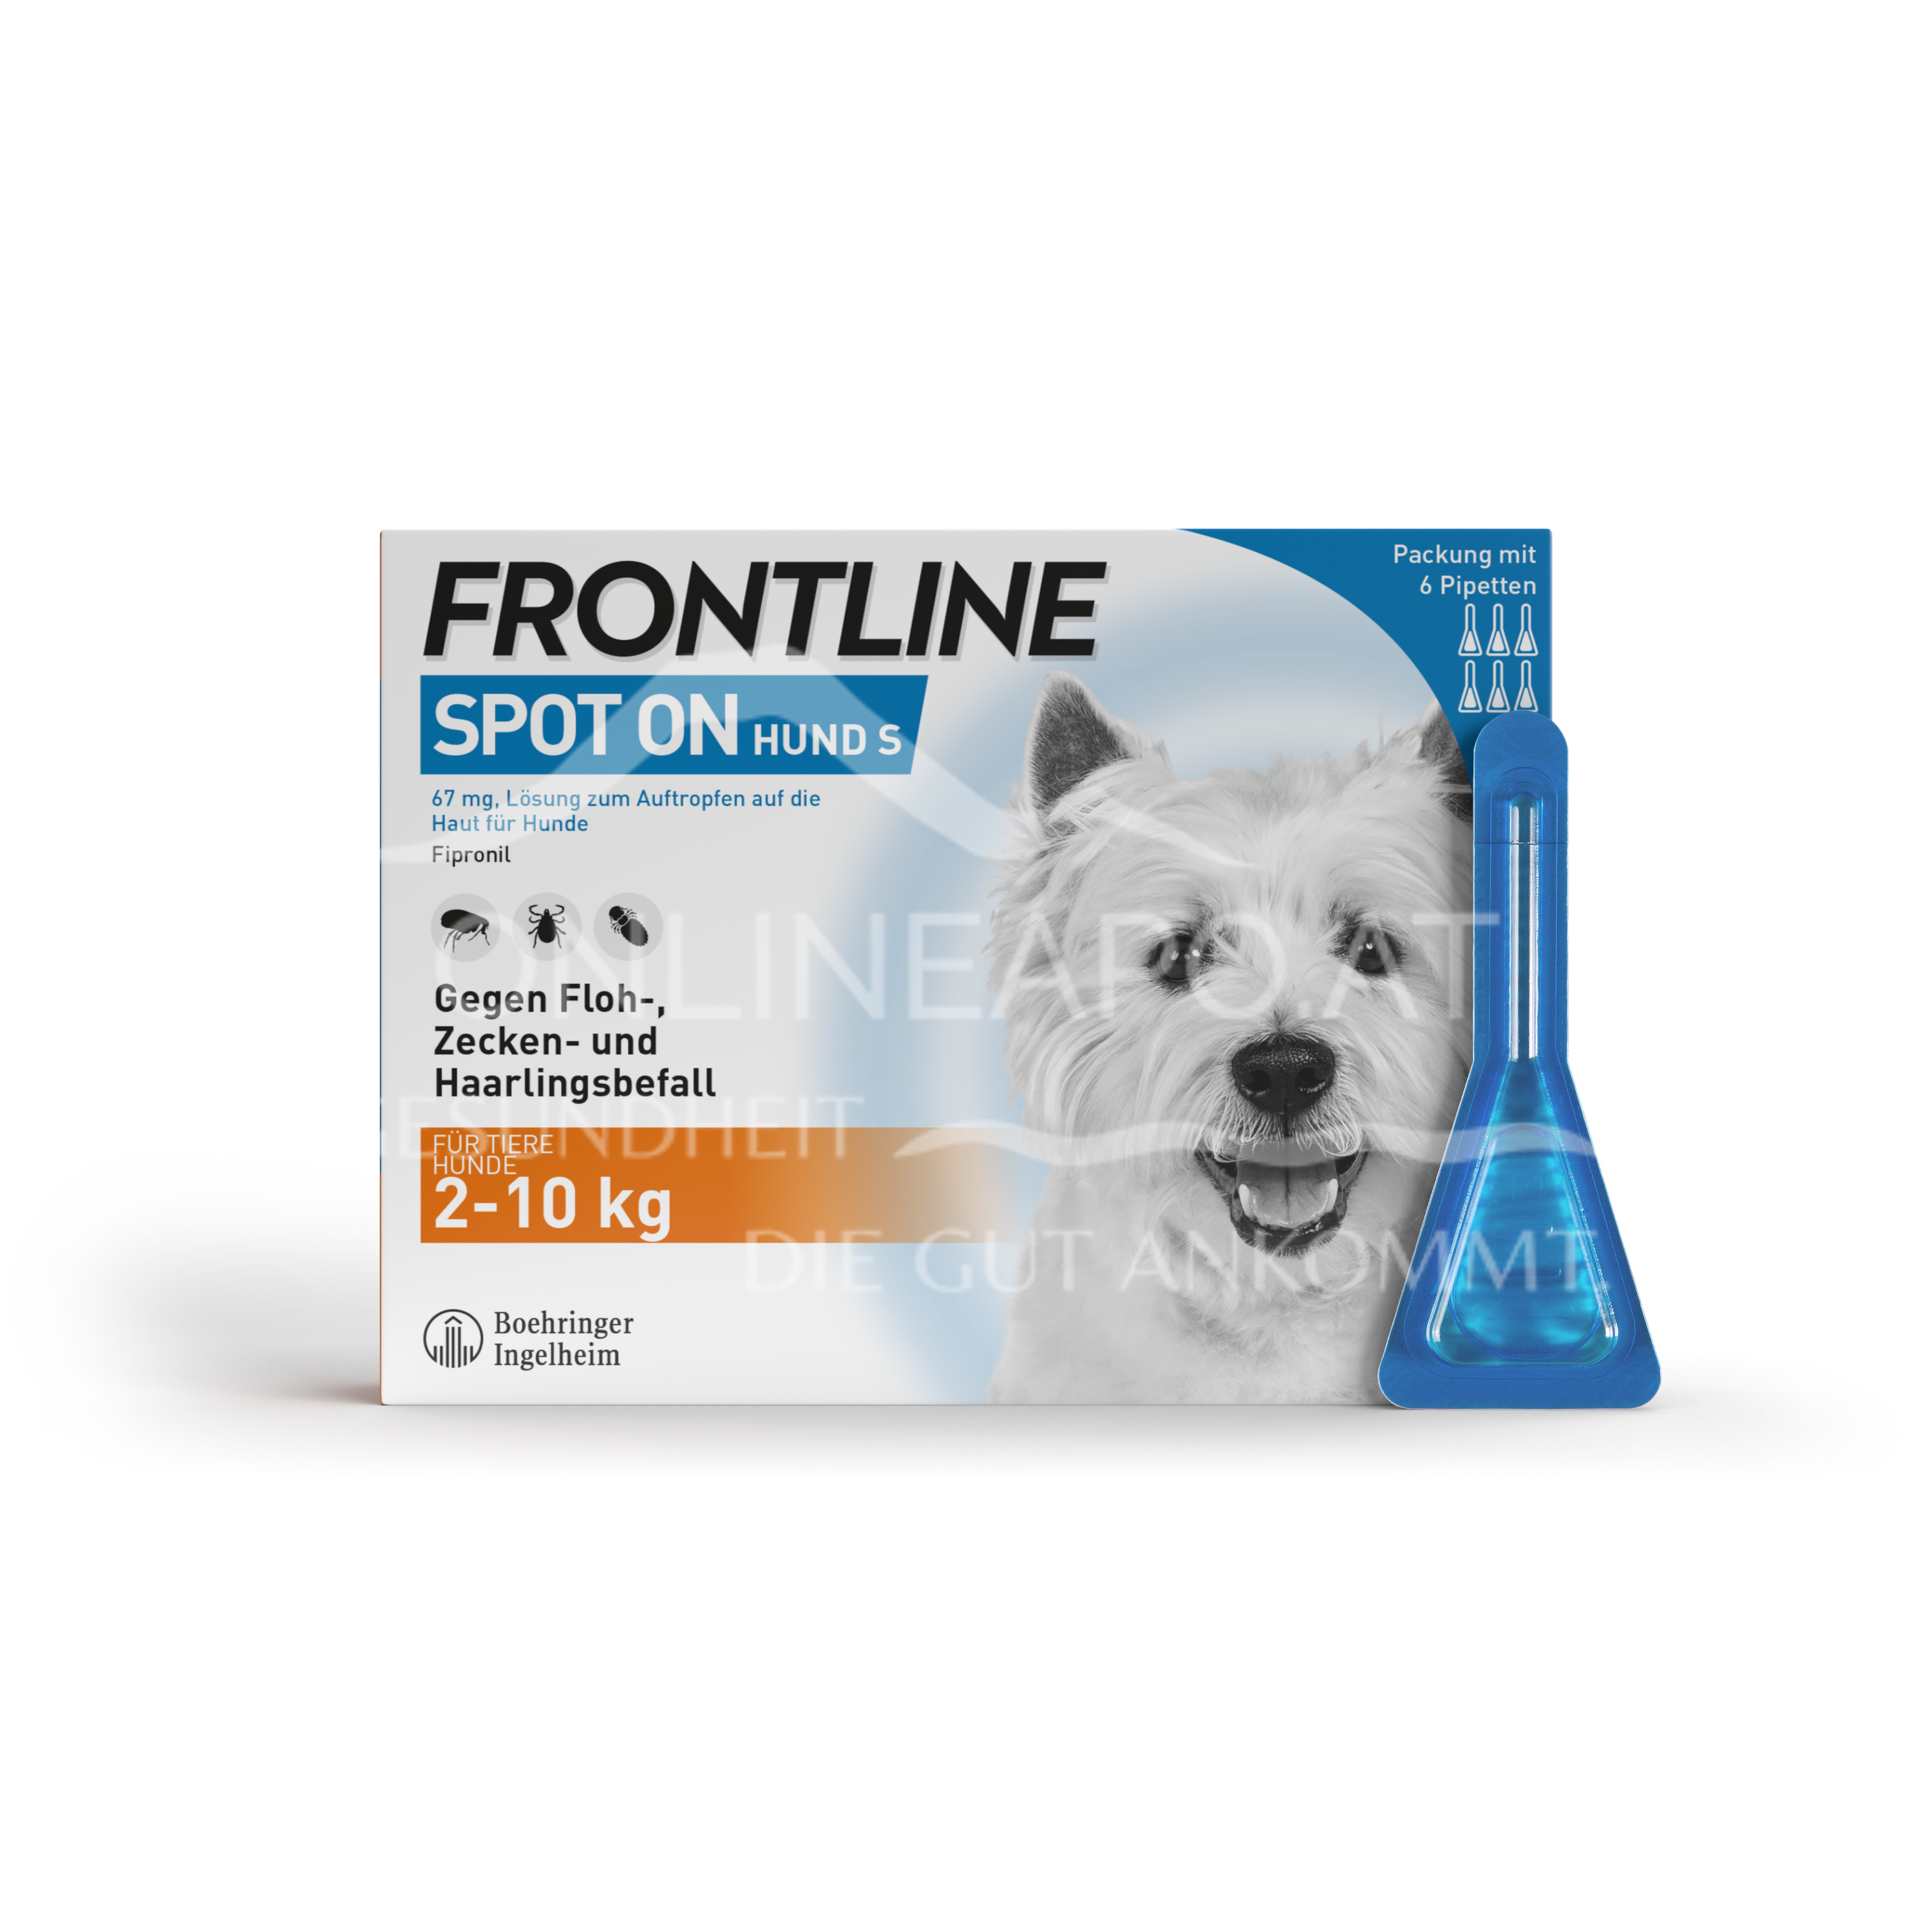 Frontline Spot on Kleine Hunde 67 mg Lösung zum Auftropfen auf die Haut